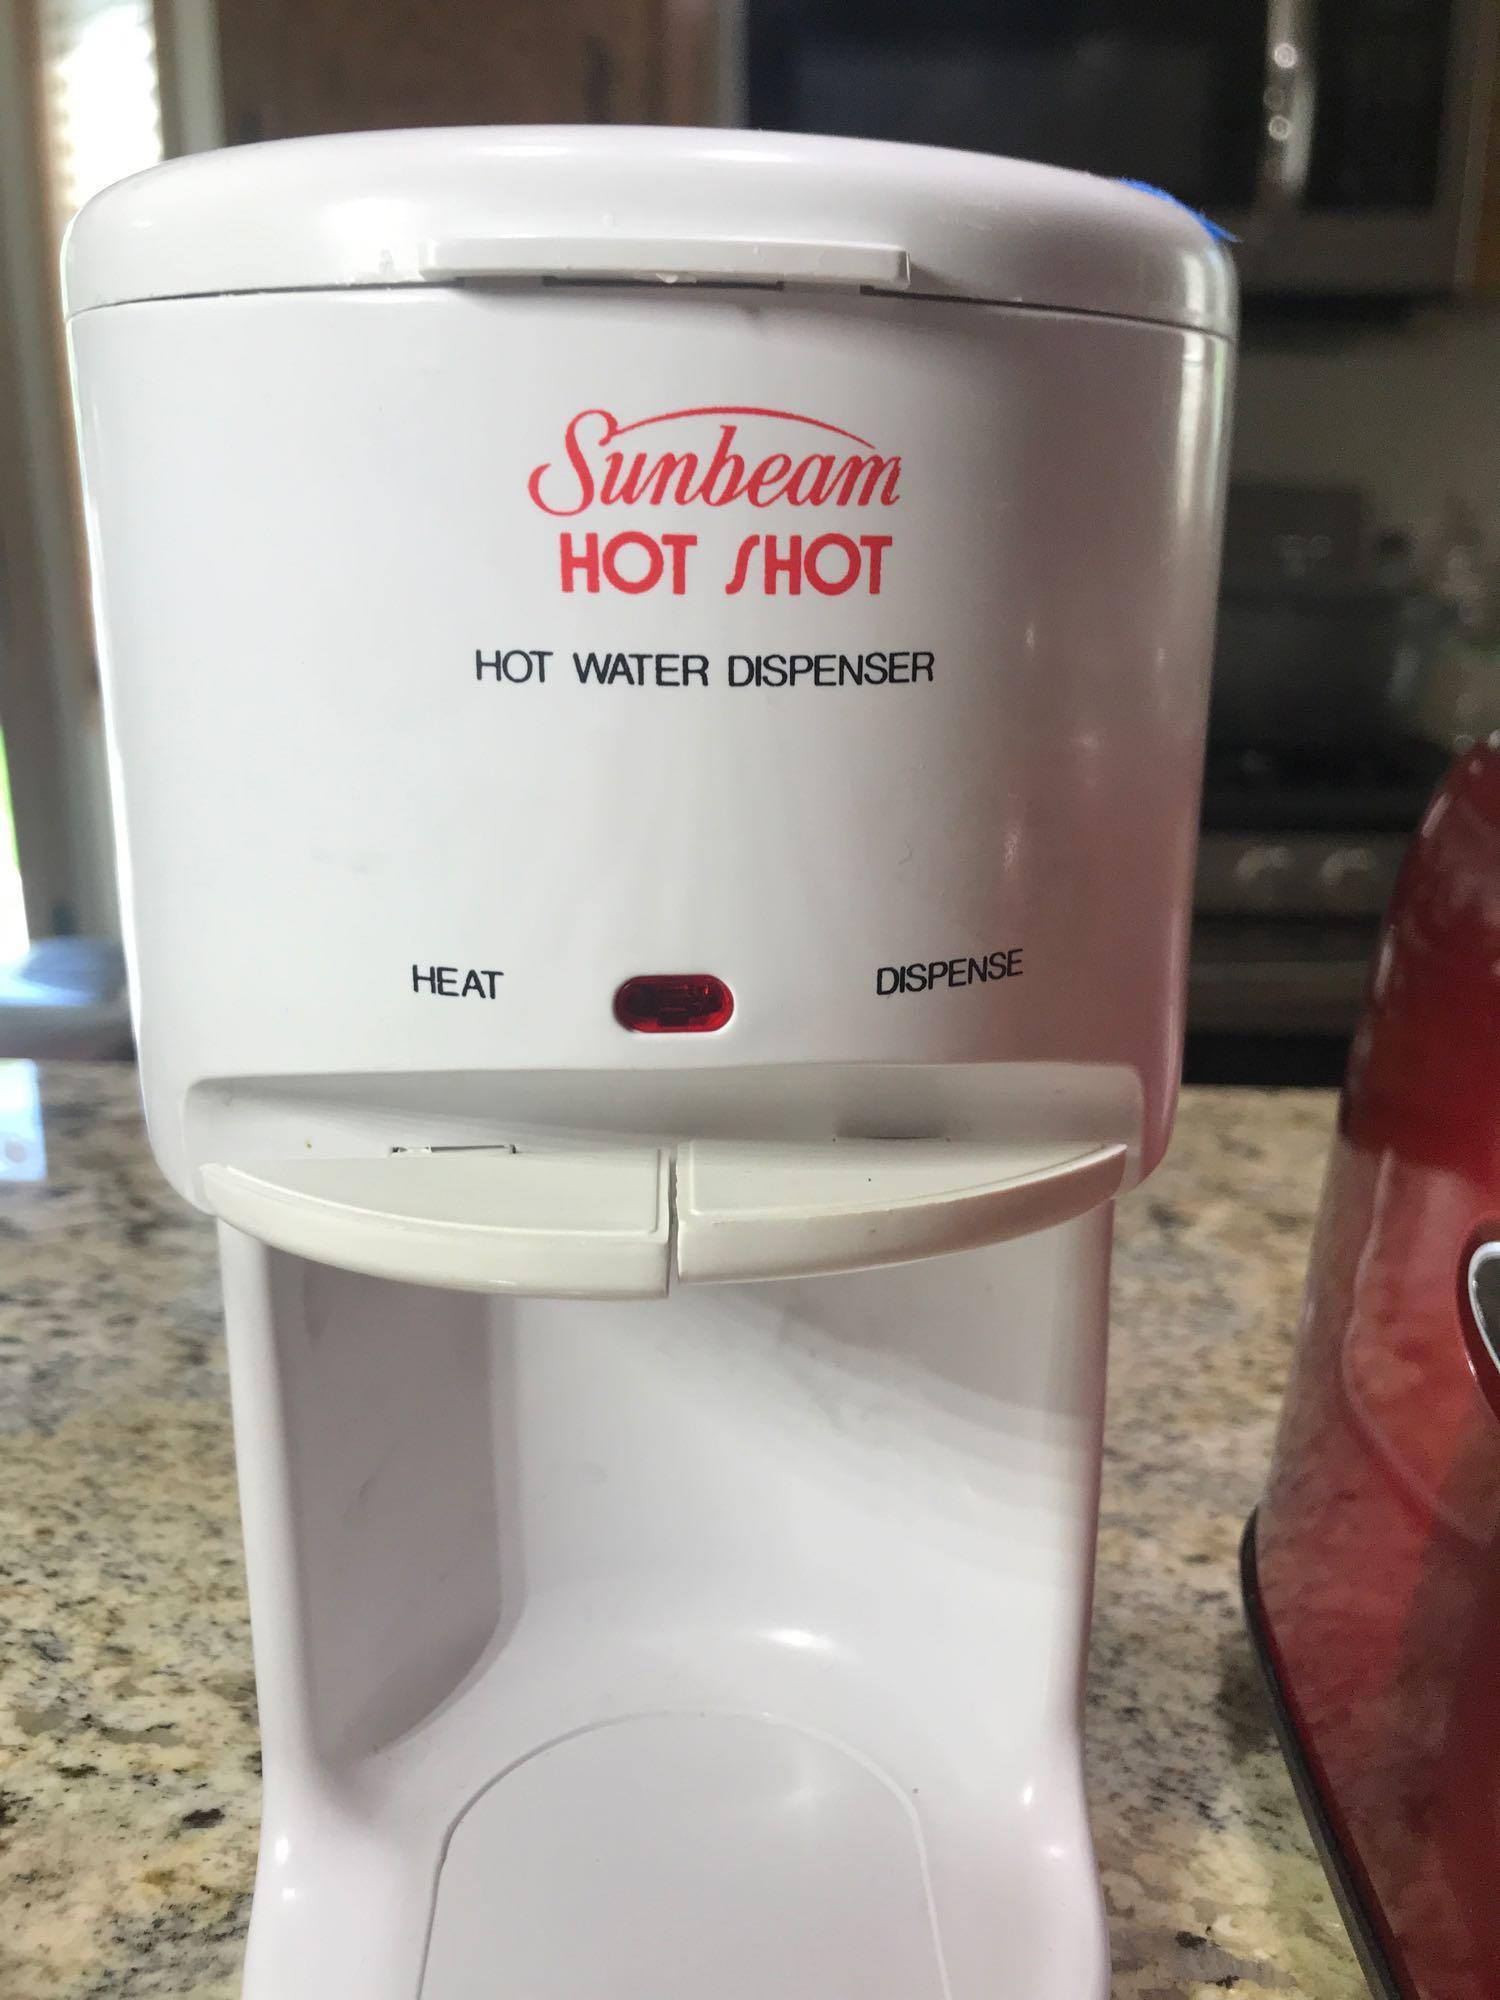 Sunbeam Hot Shot Hot Water Dispenser at